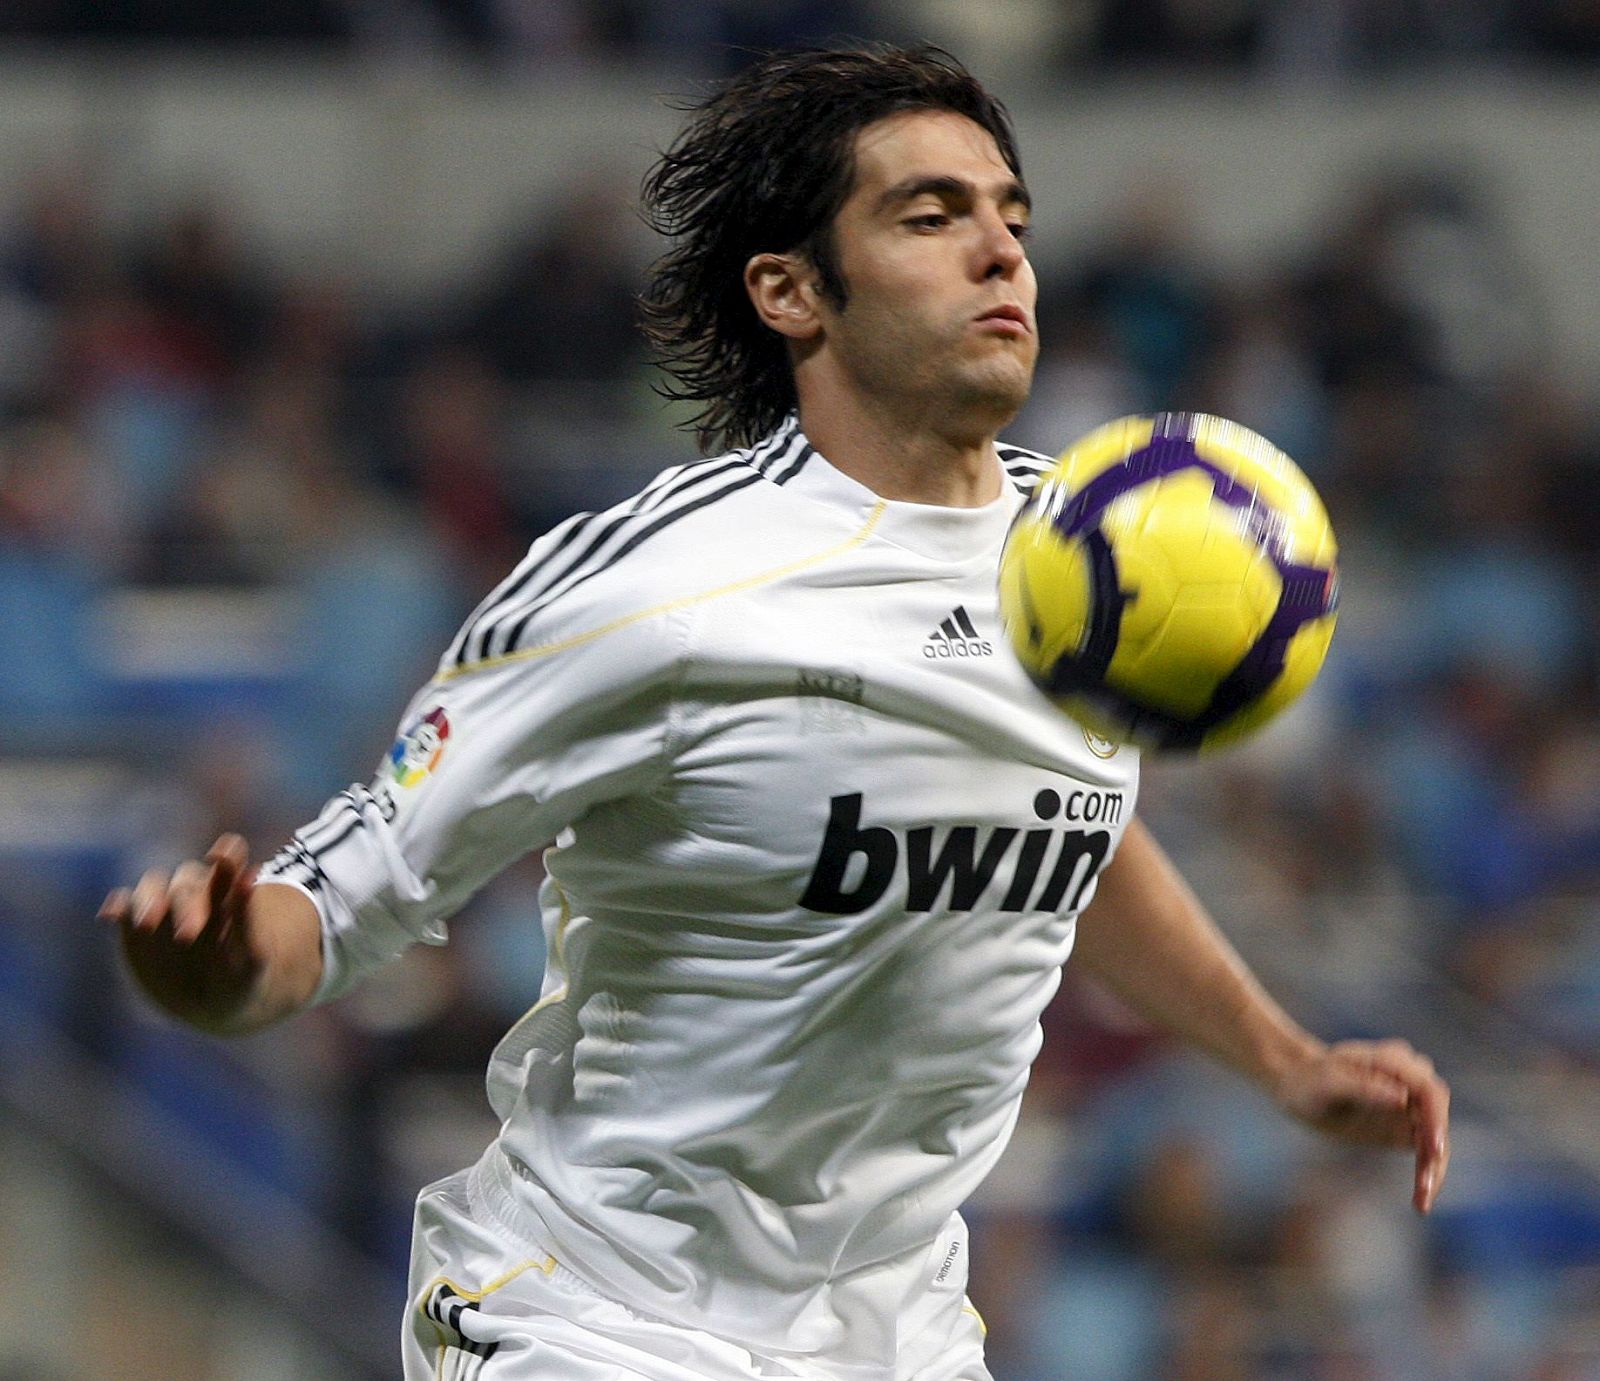 El centrocampista brasileño del Real Madrid, Ricardo Izecson "Kaká", controla el balón con el pecho.